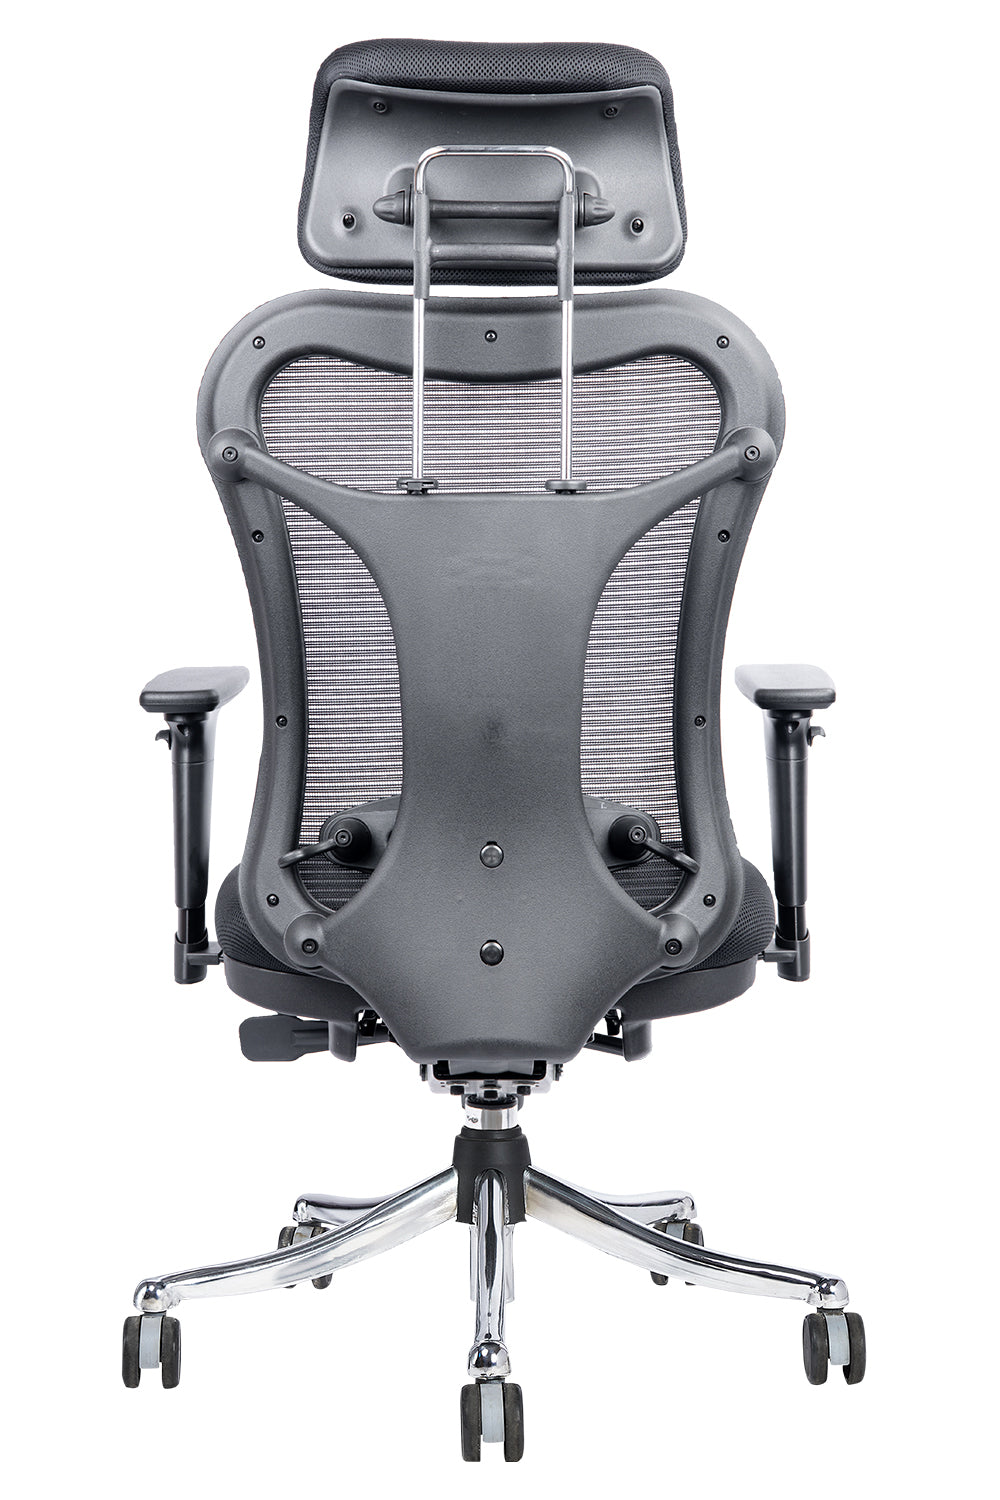 Oscar High Back Chrome Base Executive Chair With Cushion Seat And 3D Armrest  - Black